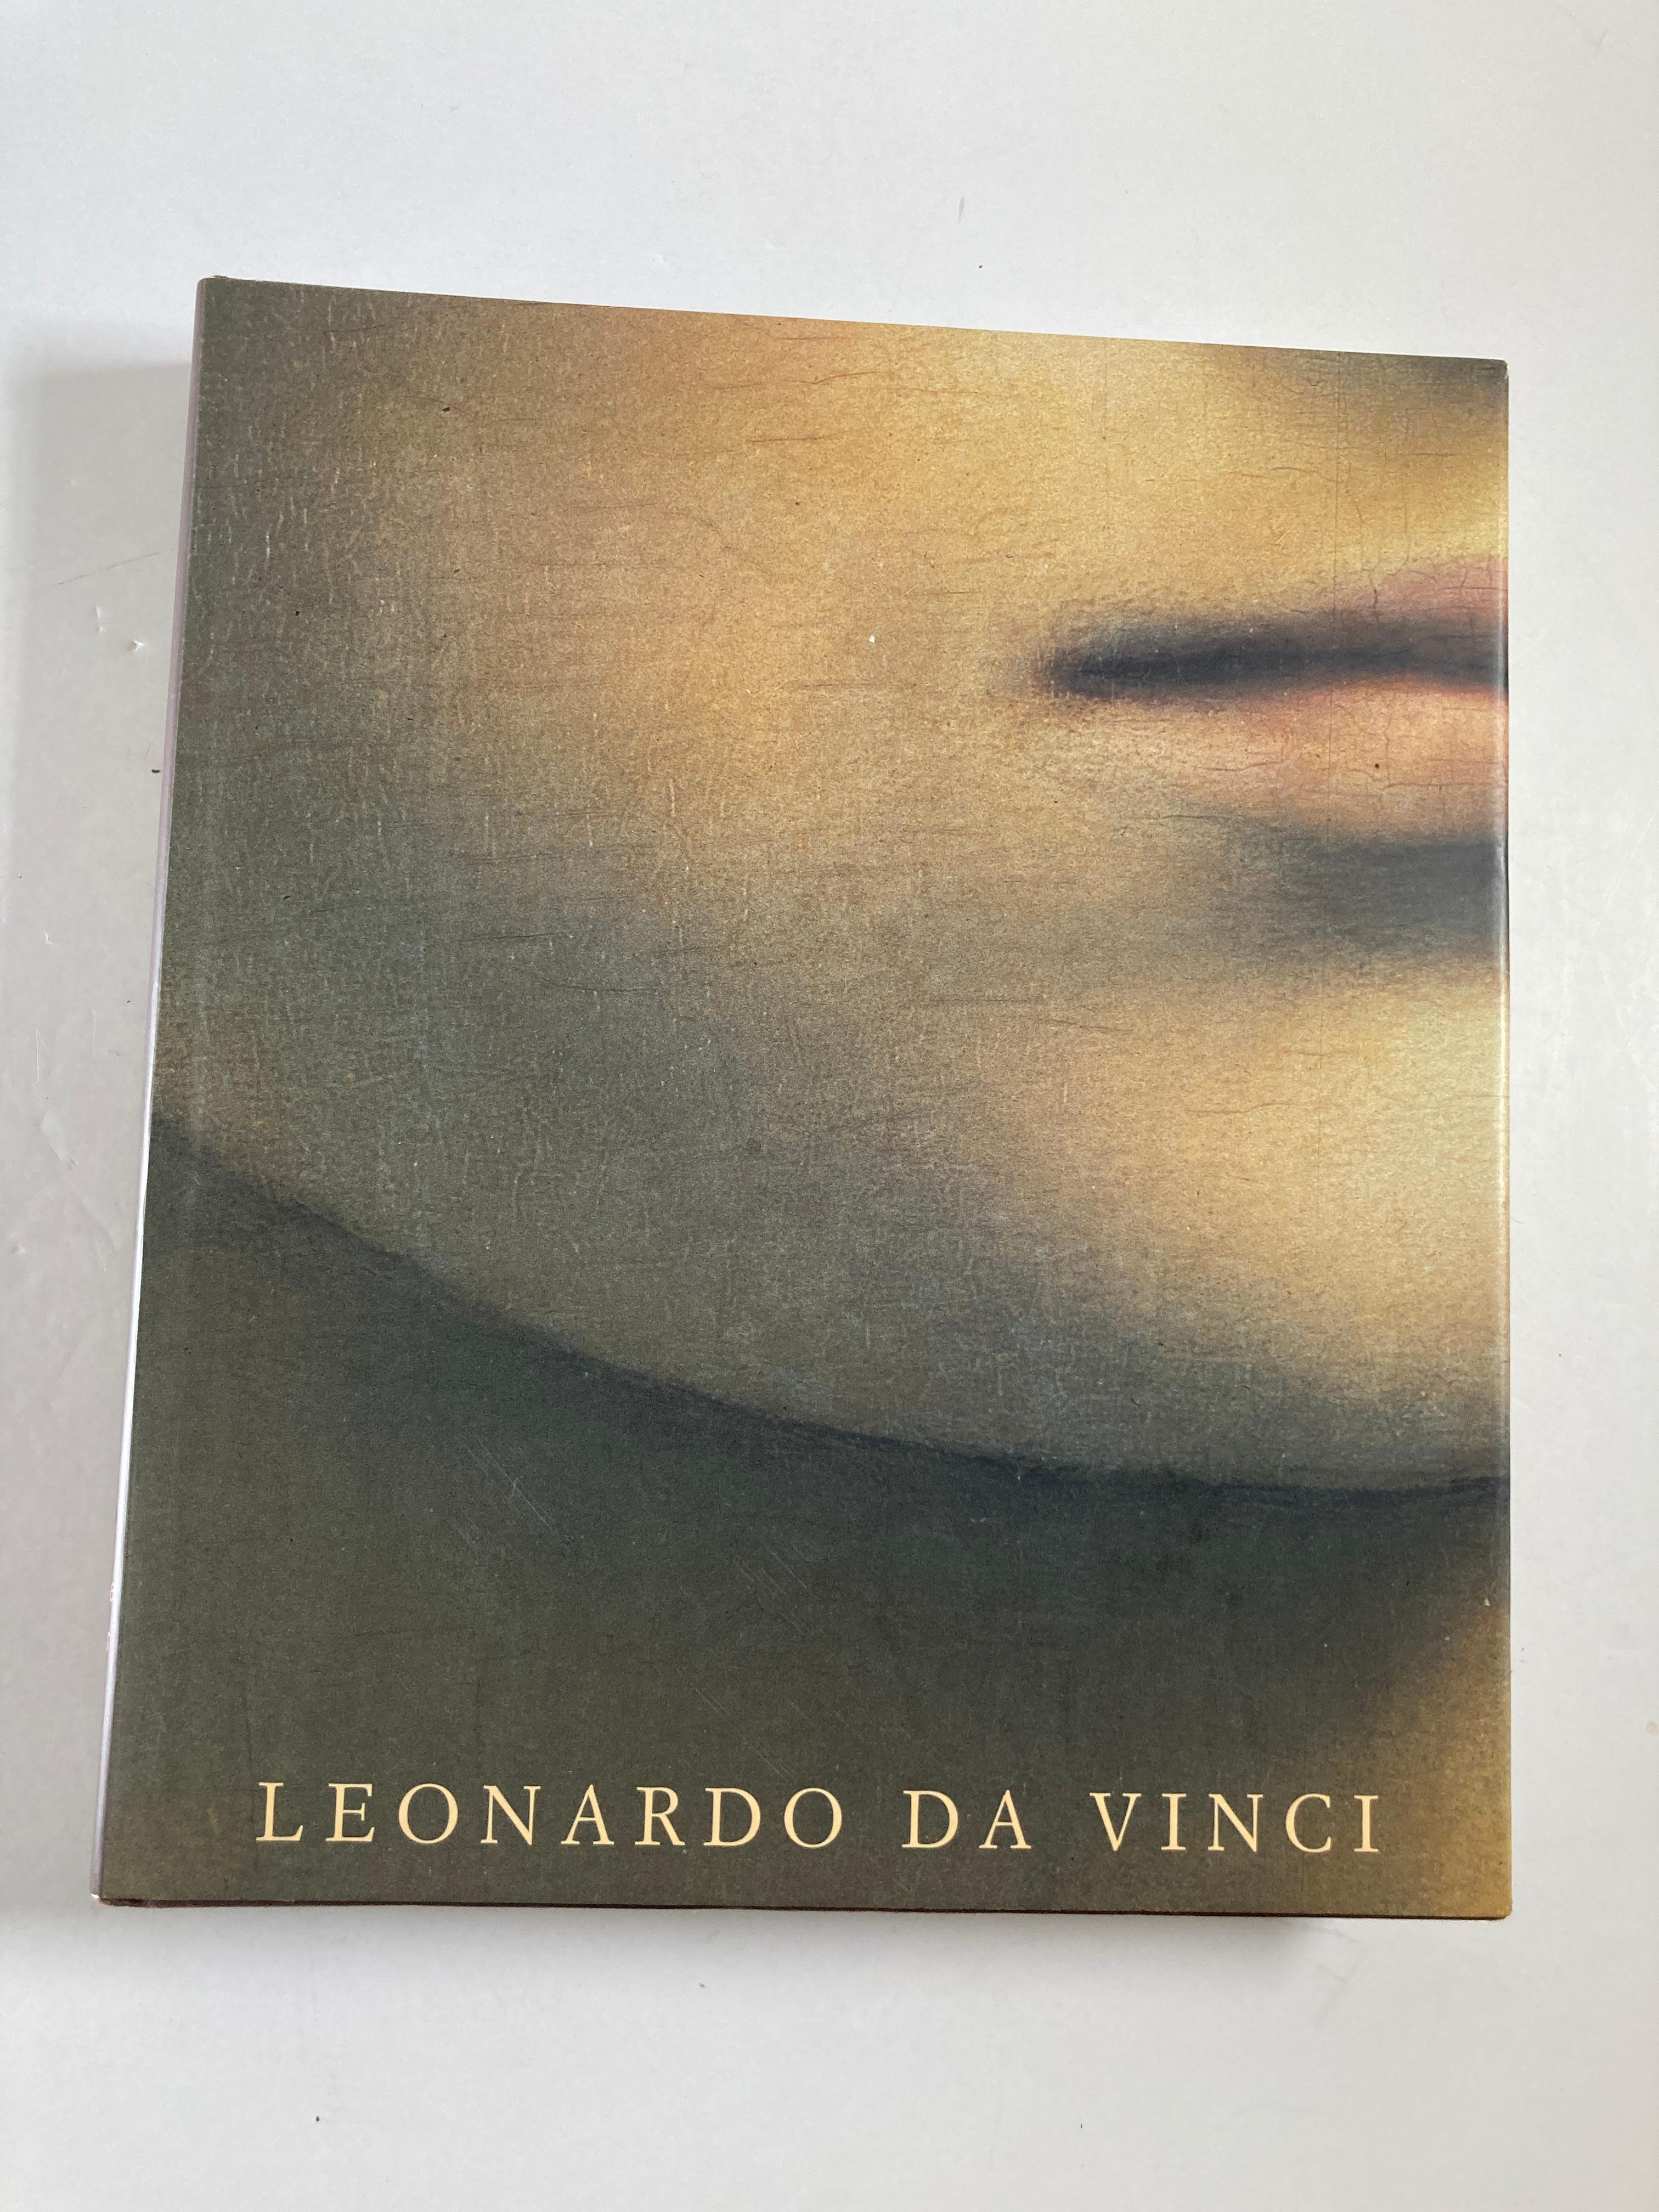 Leonardo da Vinci. Les peintures complètes.
Livre de Pietro Marani
De Vinci en détail : La vie et l'œuvre de Léonard, toutes les peintures.
Léonard de Vinci (1452-1519), l'un des êtres humains les plus accomplis qui aient jamais vécu, est reconnu